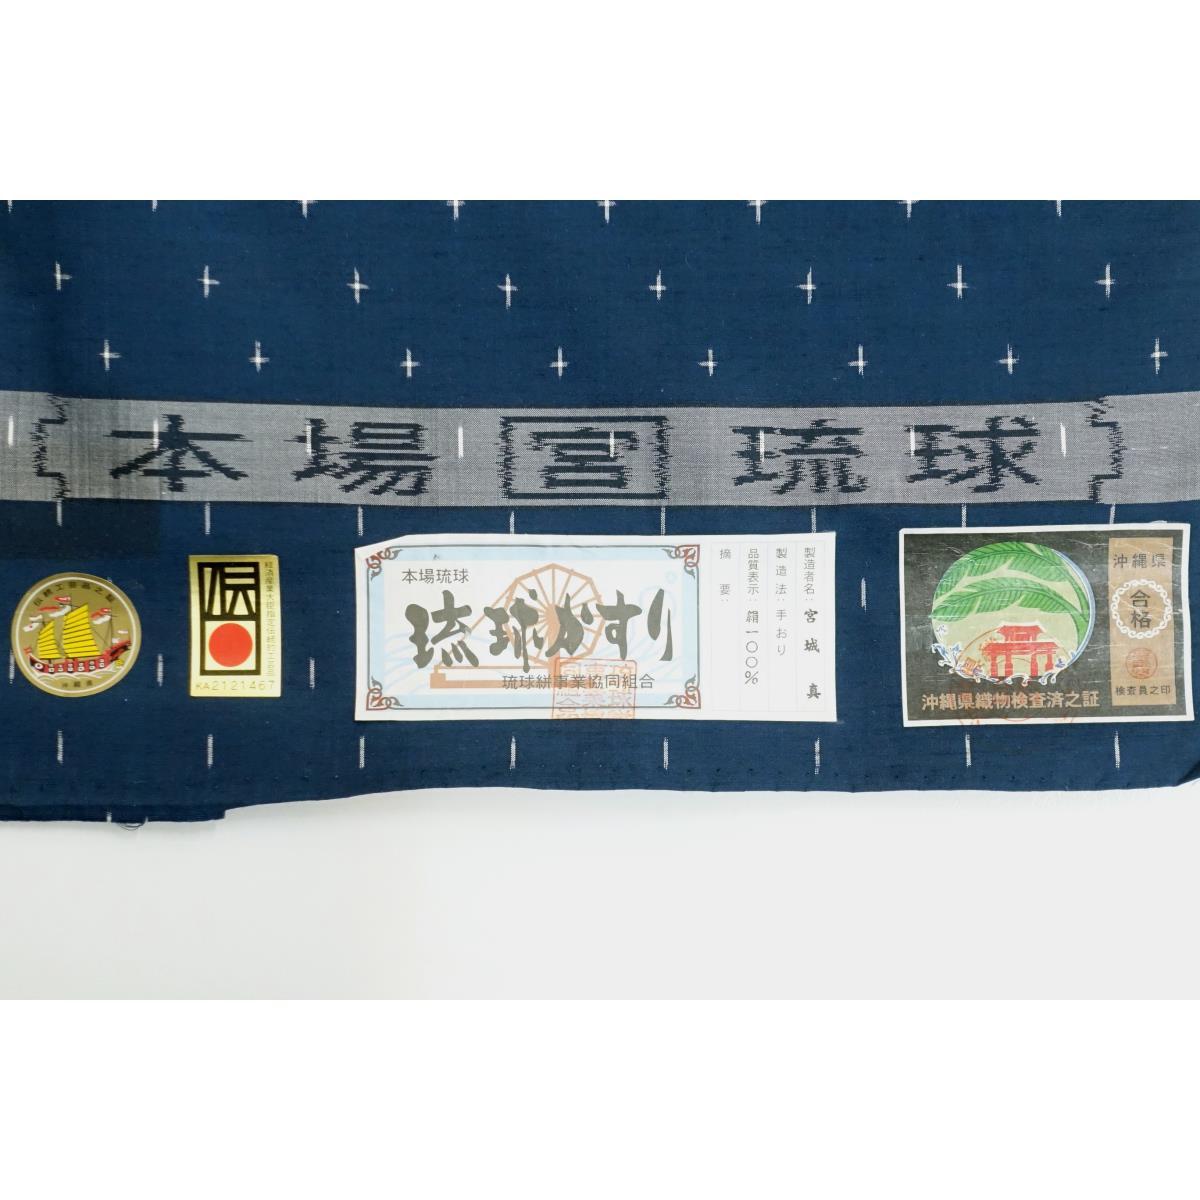 [Unused items] Kijyaku cloth Ryukyu Kasuri